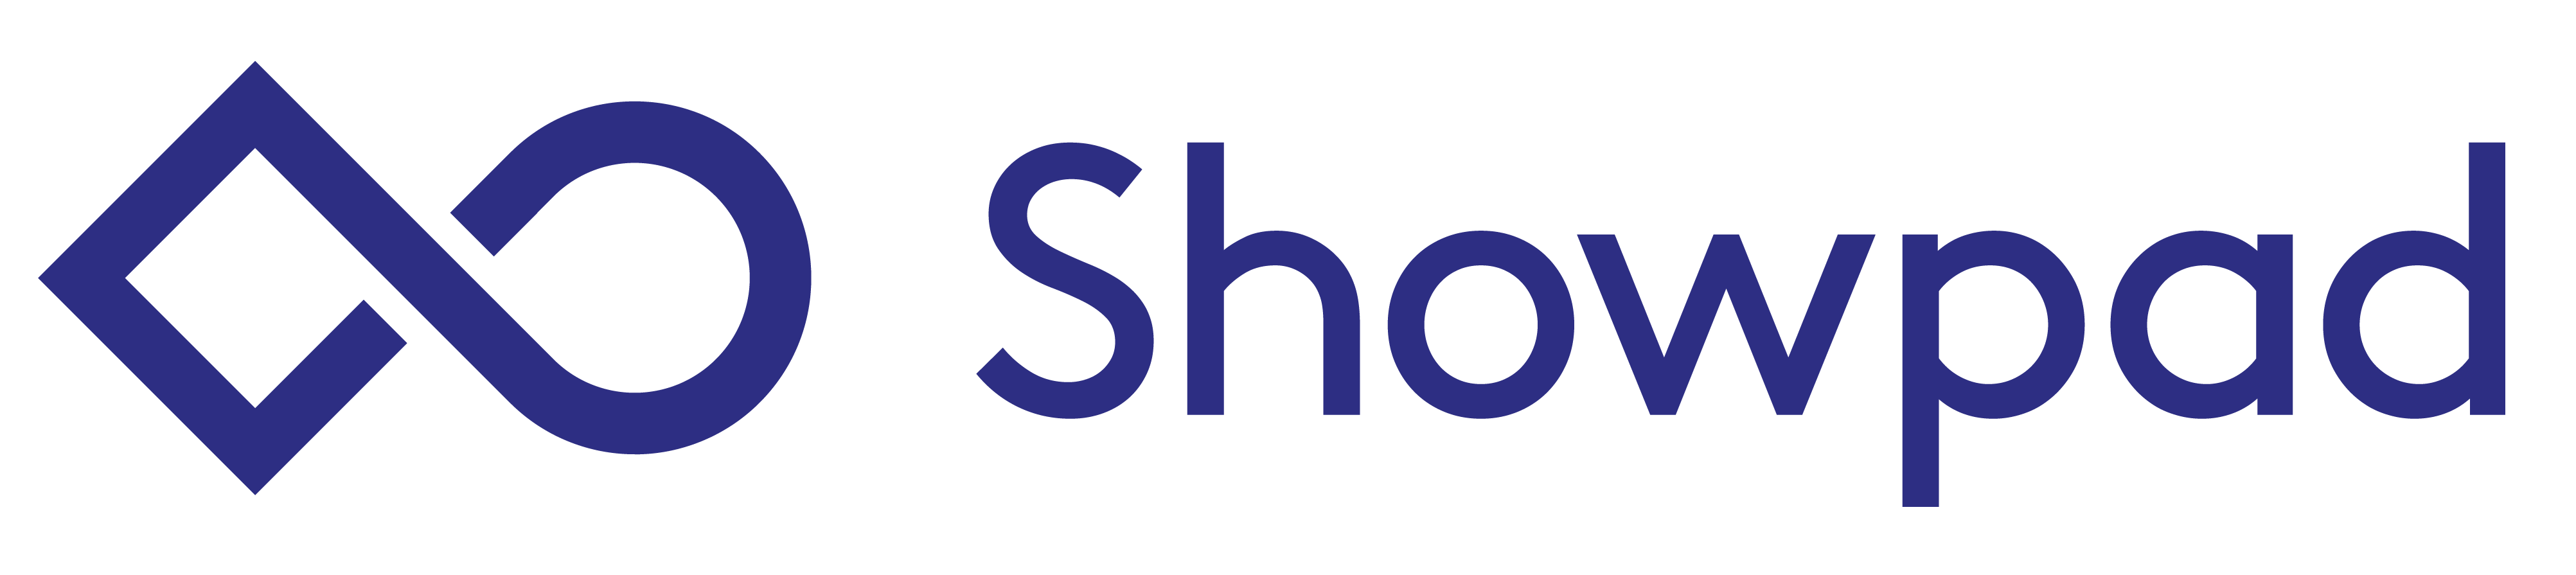 showpad-logo-horizontal-blue-2